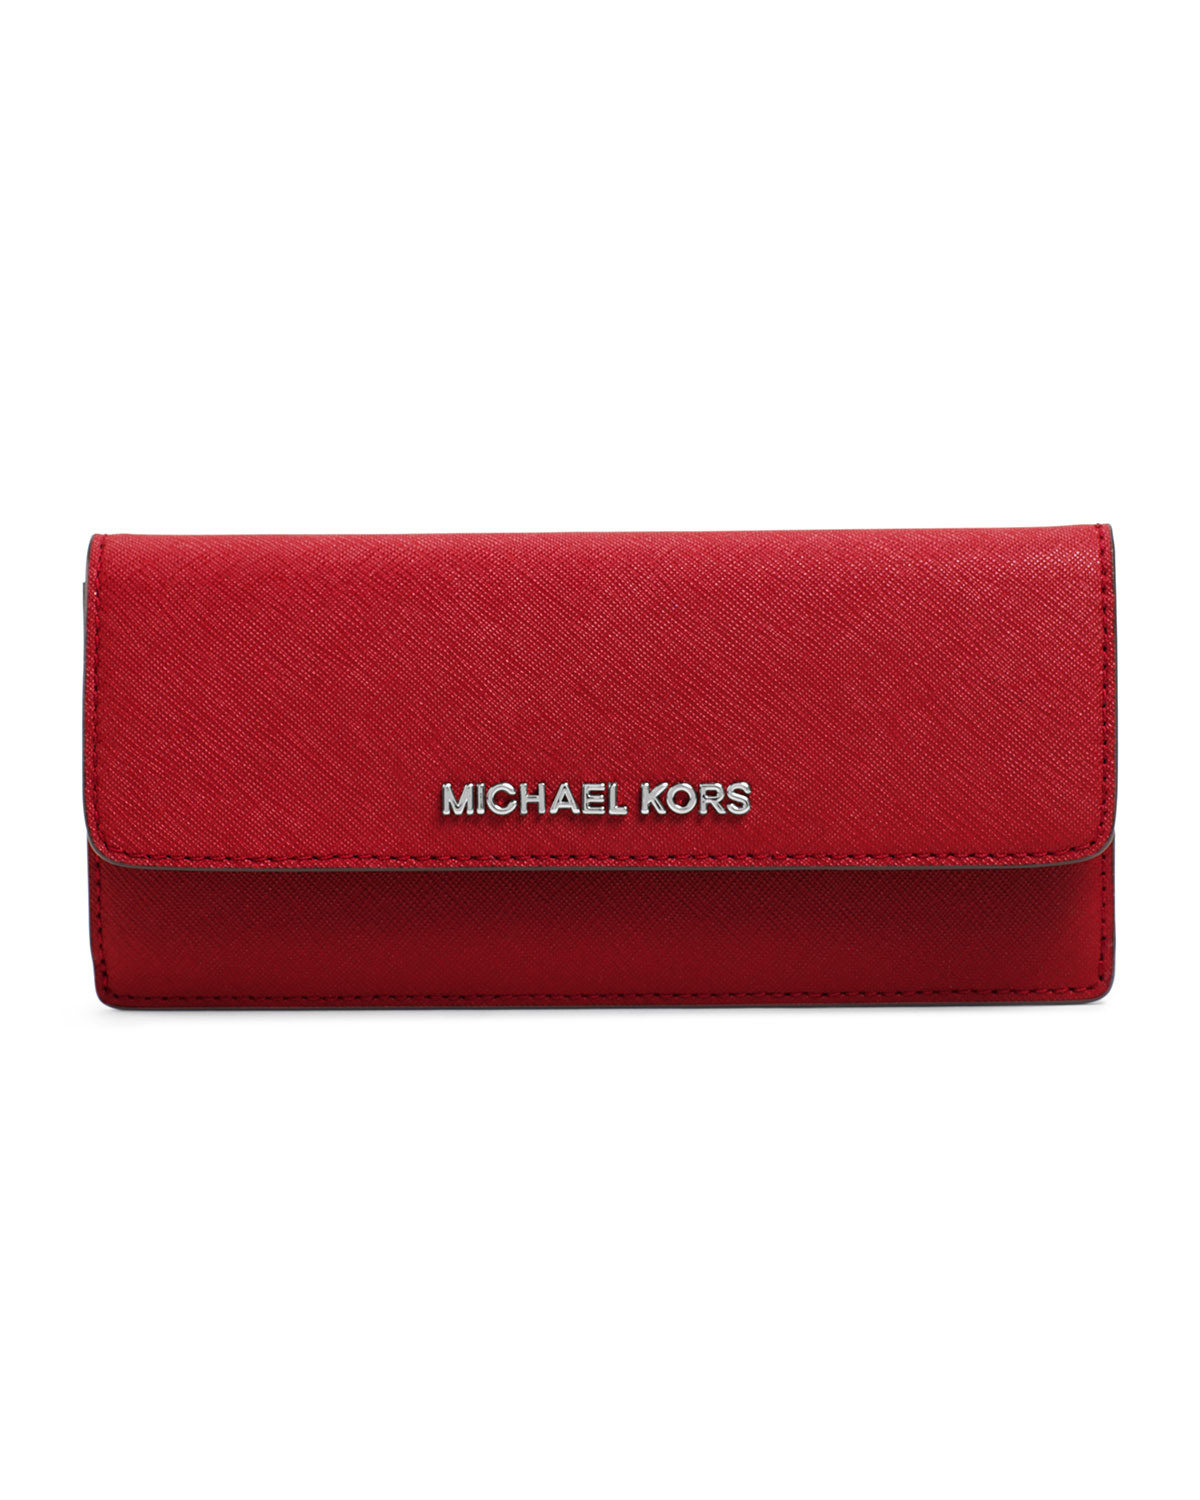 michael kors skinny wallet